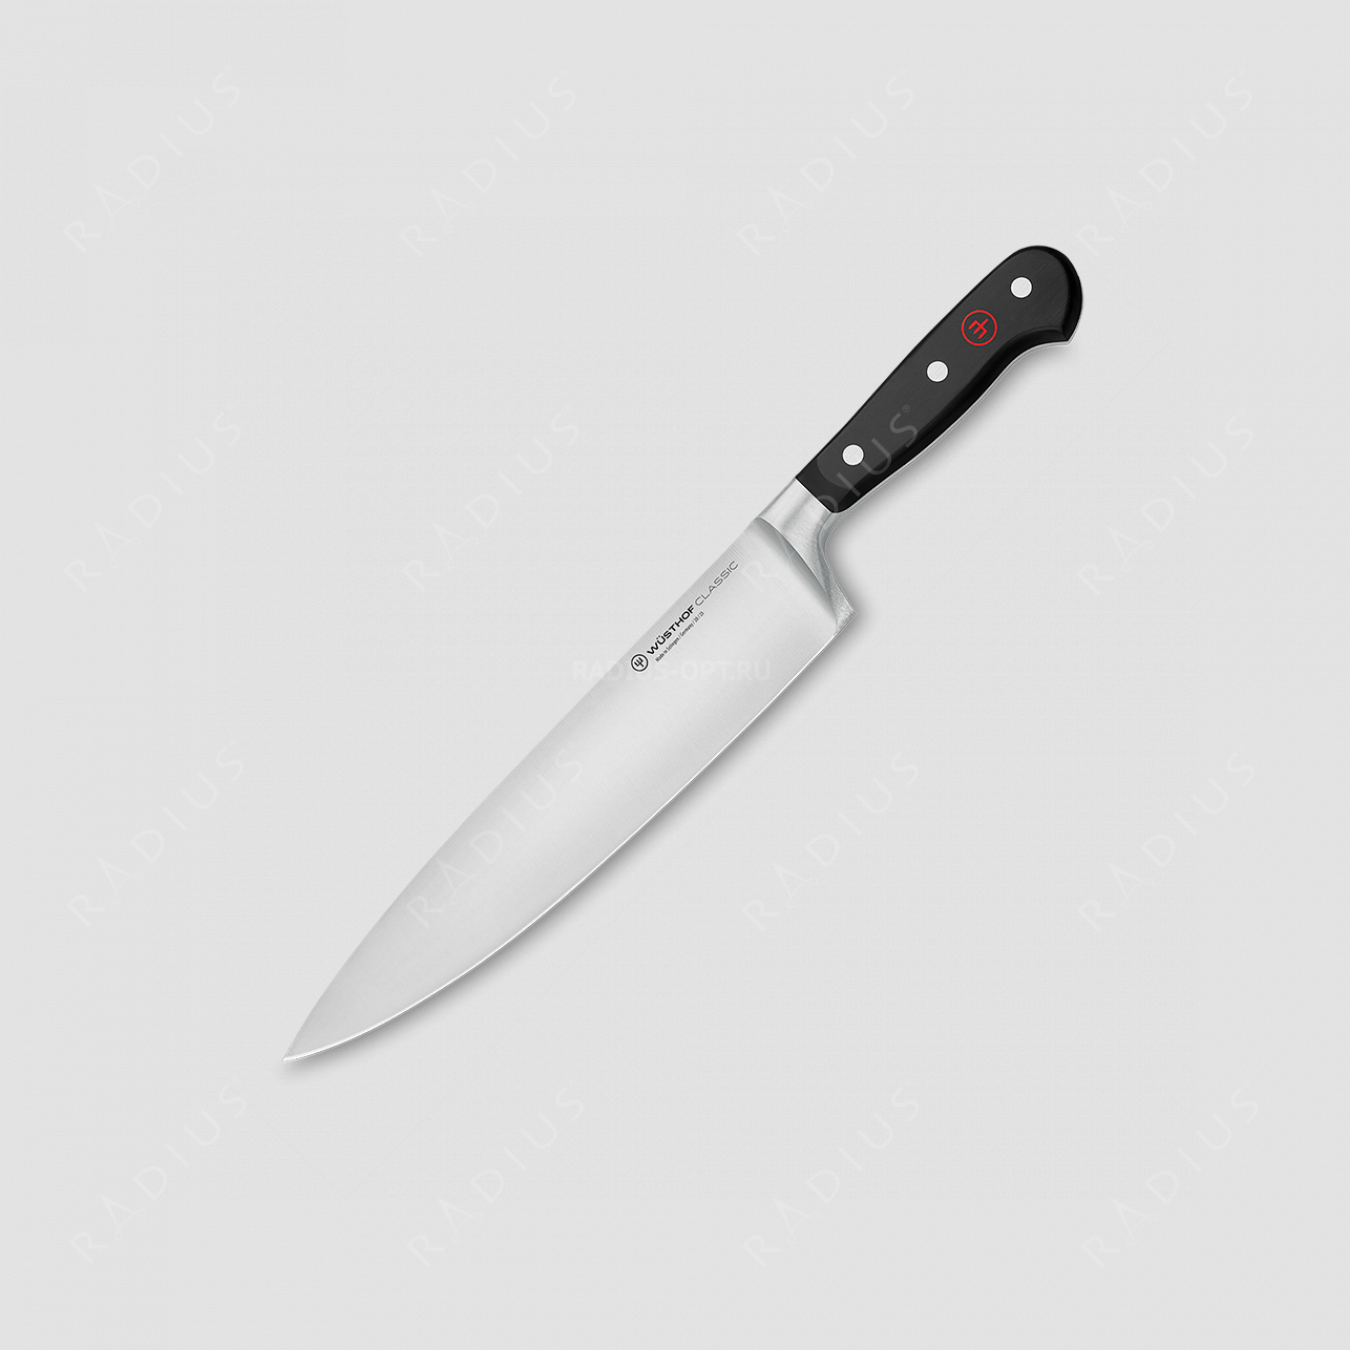 Профессиональный поварской кухонный нож 23 см, серия Classic, WUESTHOF, Золинген, Германия